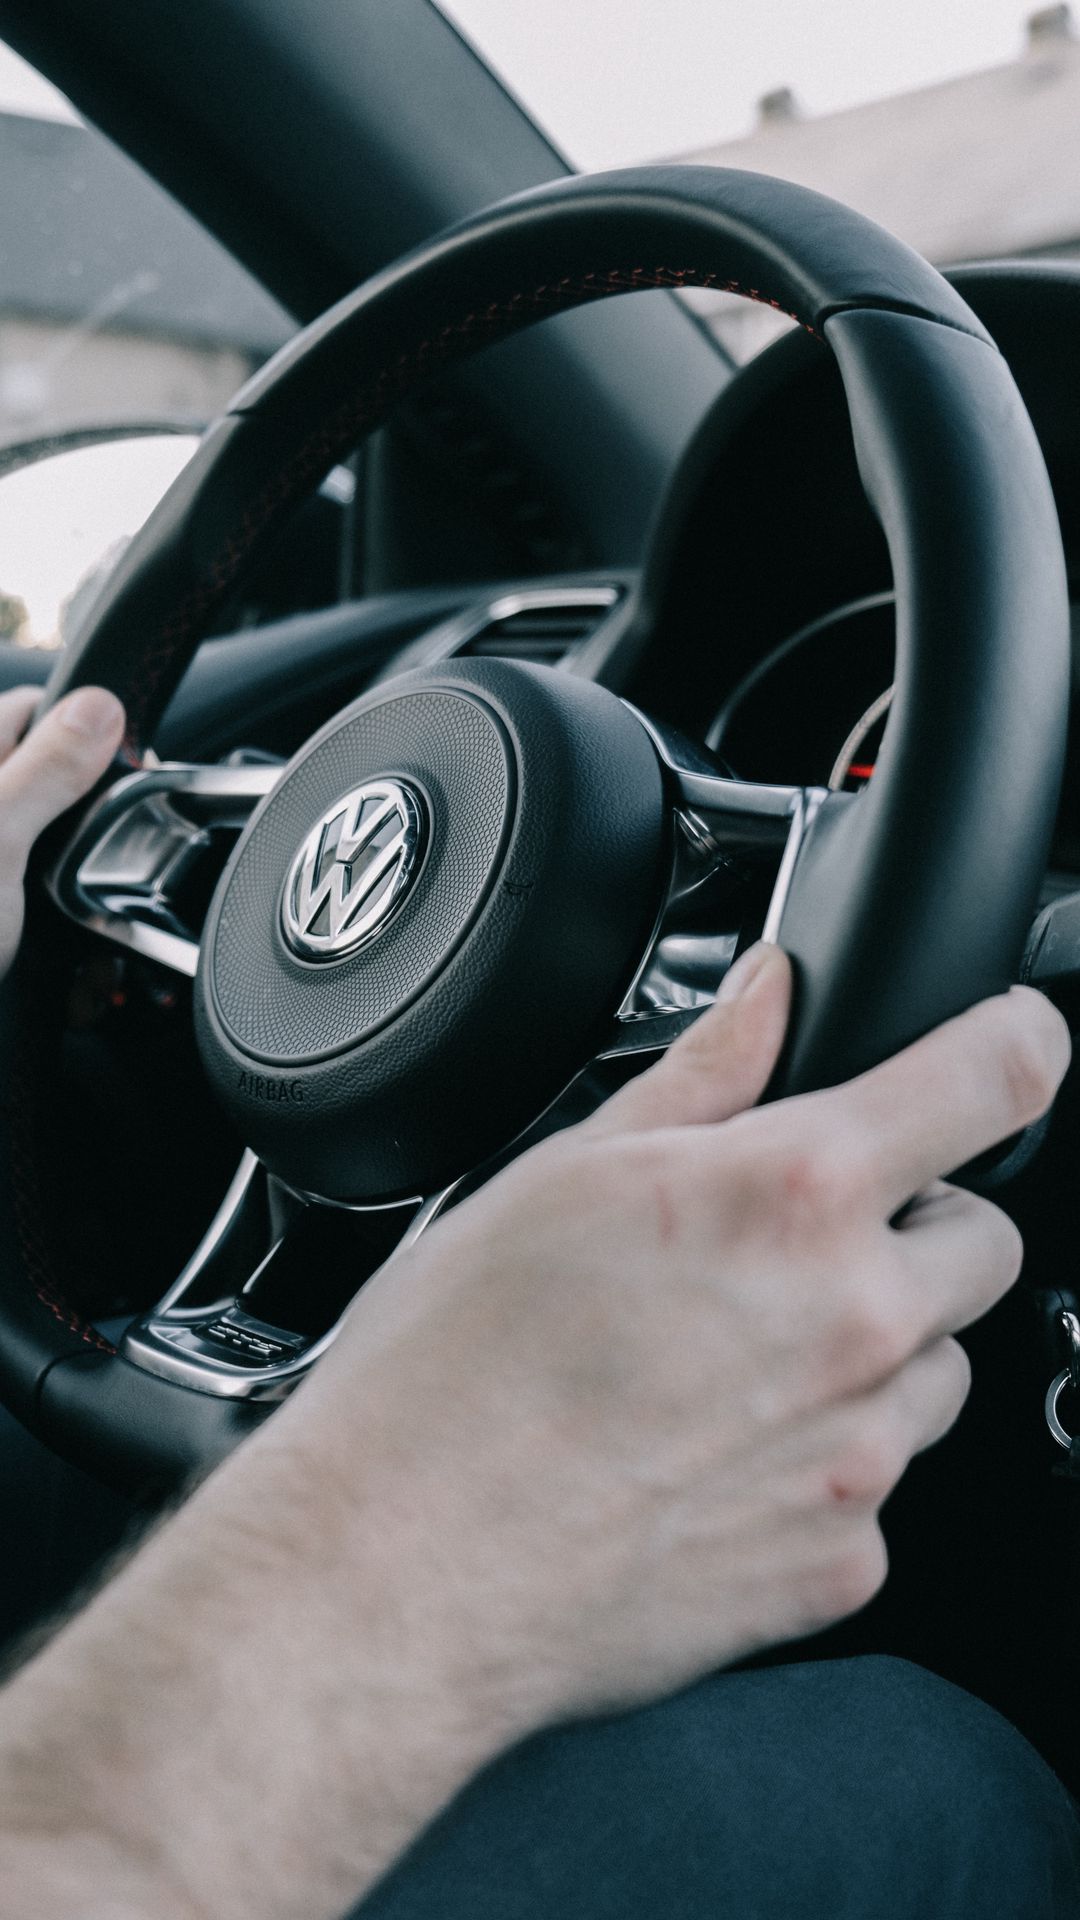 Volkswagen Steering Wheel Hands Wallpapers Free Download